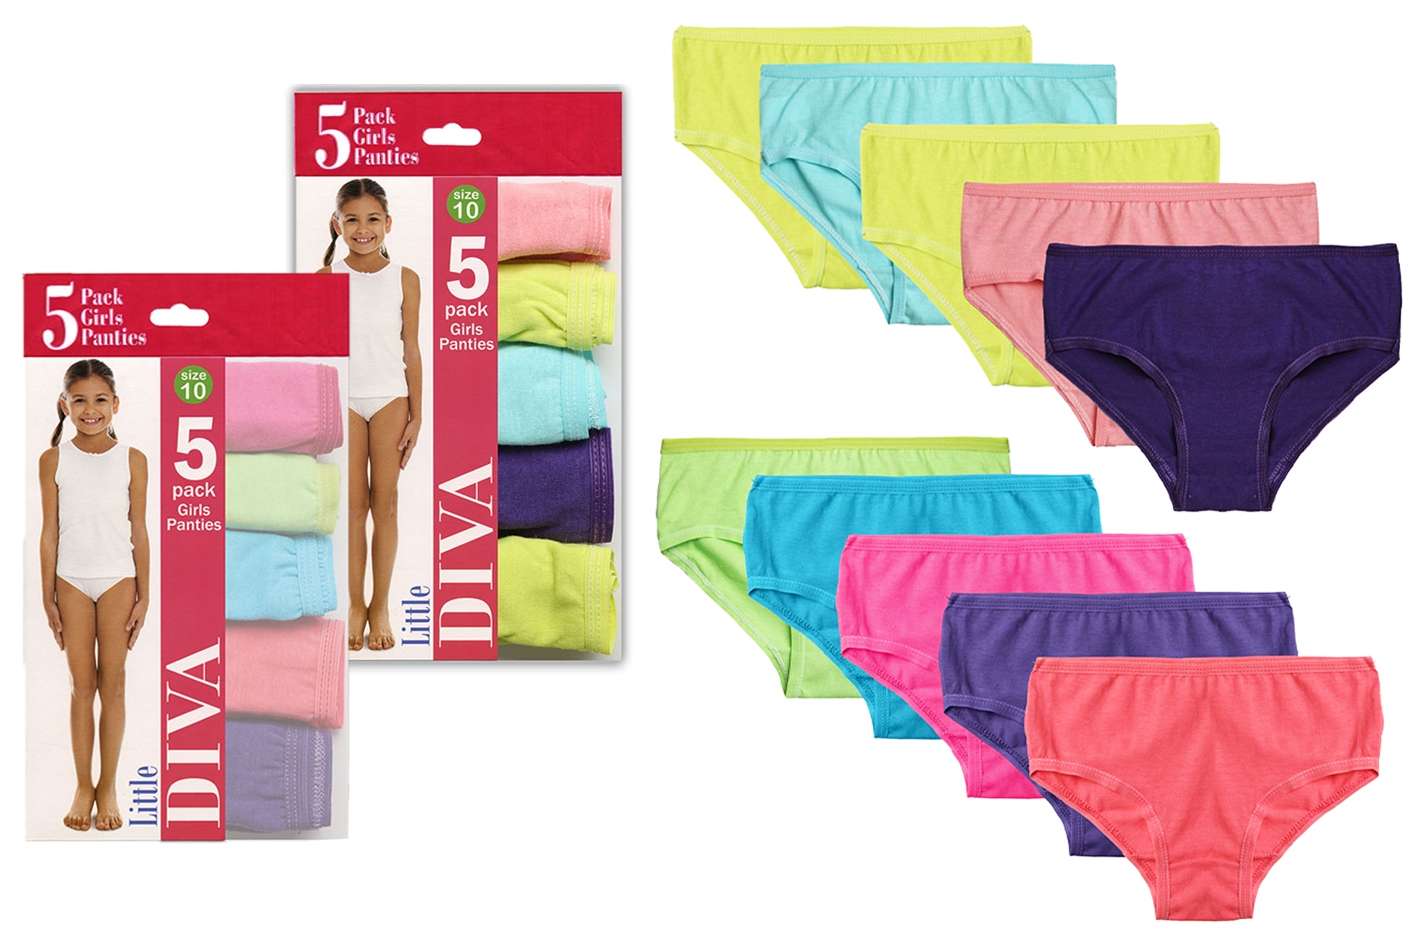 Hanes Girls Size 12 Assorted Cotton Brief Underwear 10 Pack